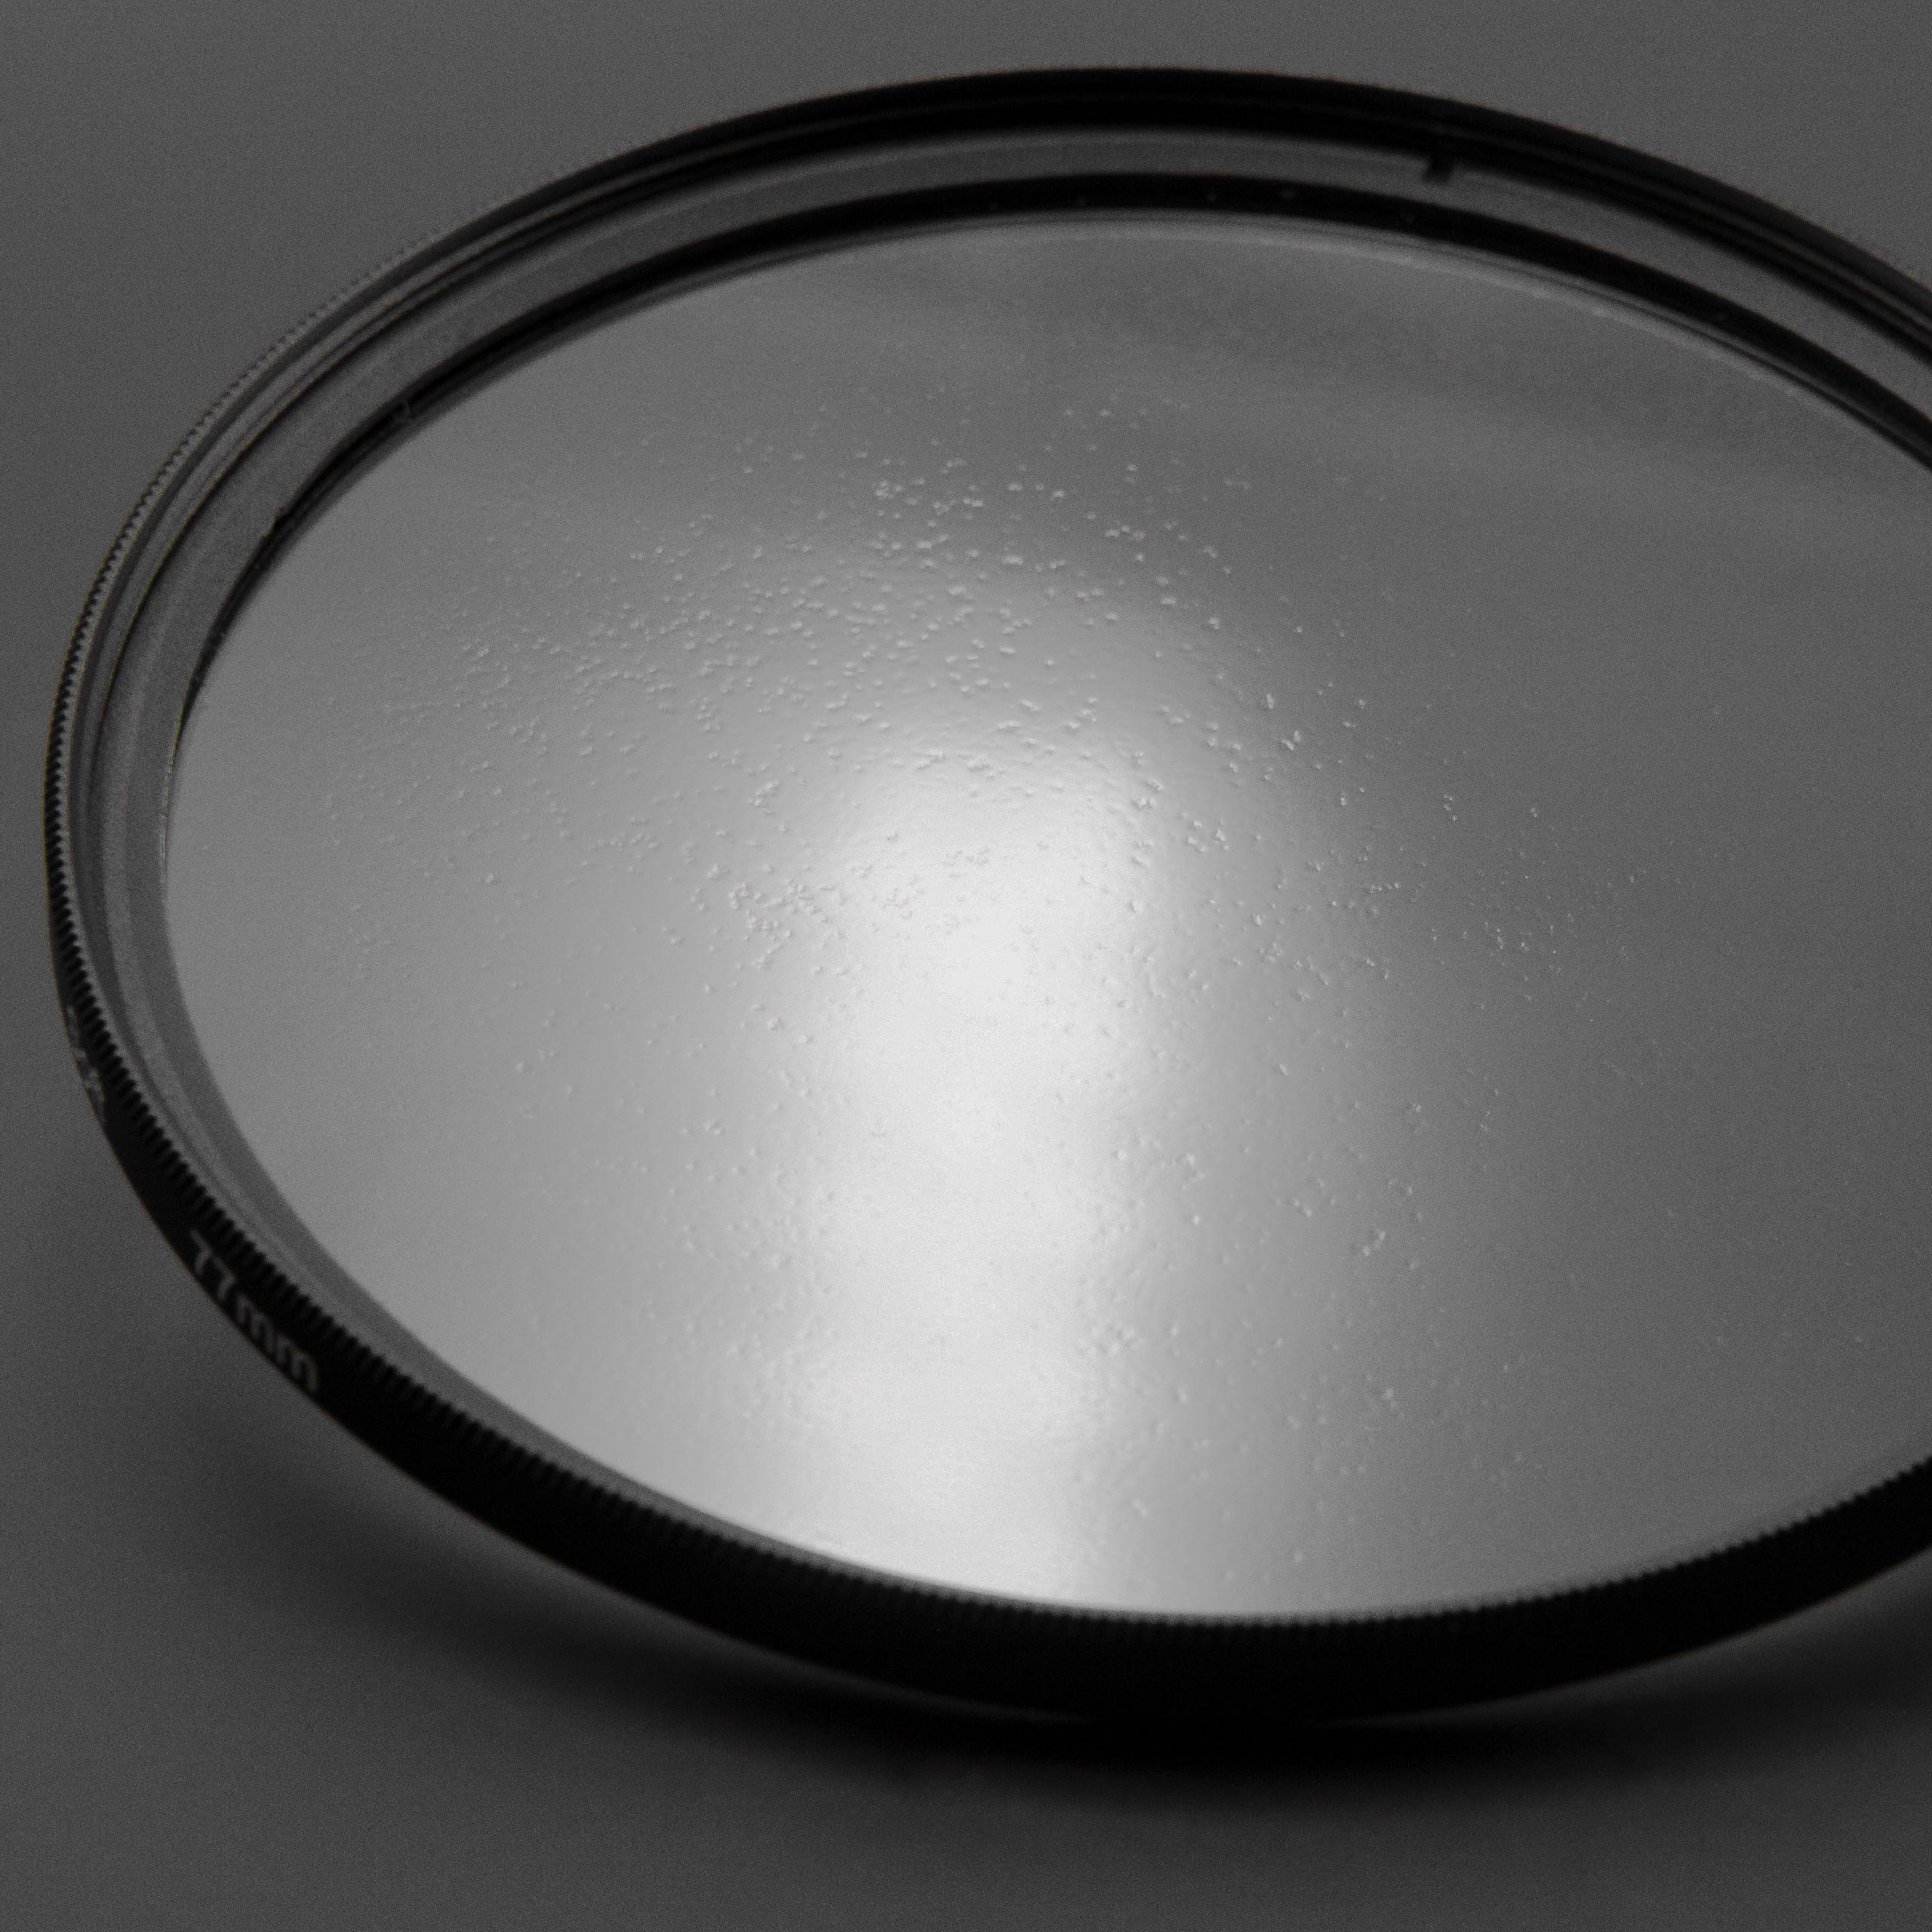 Filtro soft-focus per fotocamere e obiettivi con filettatura da 67 mm 